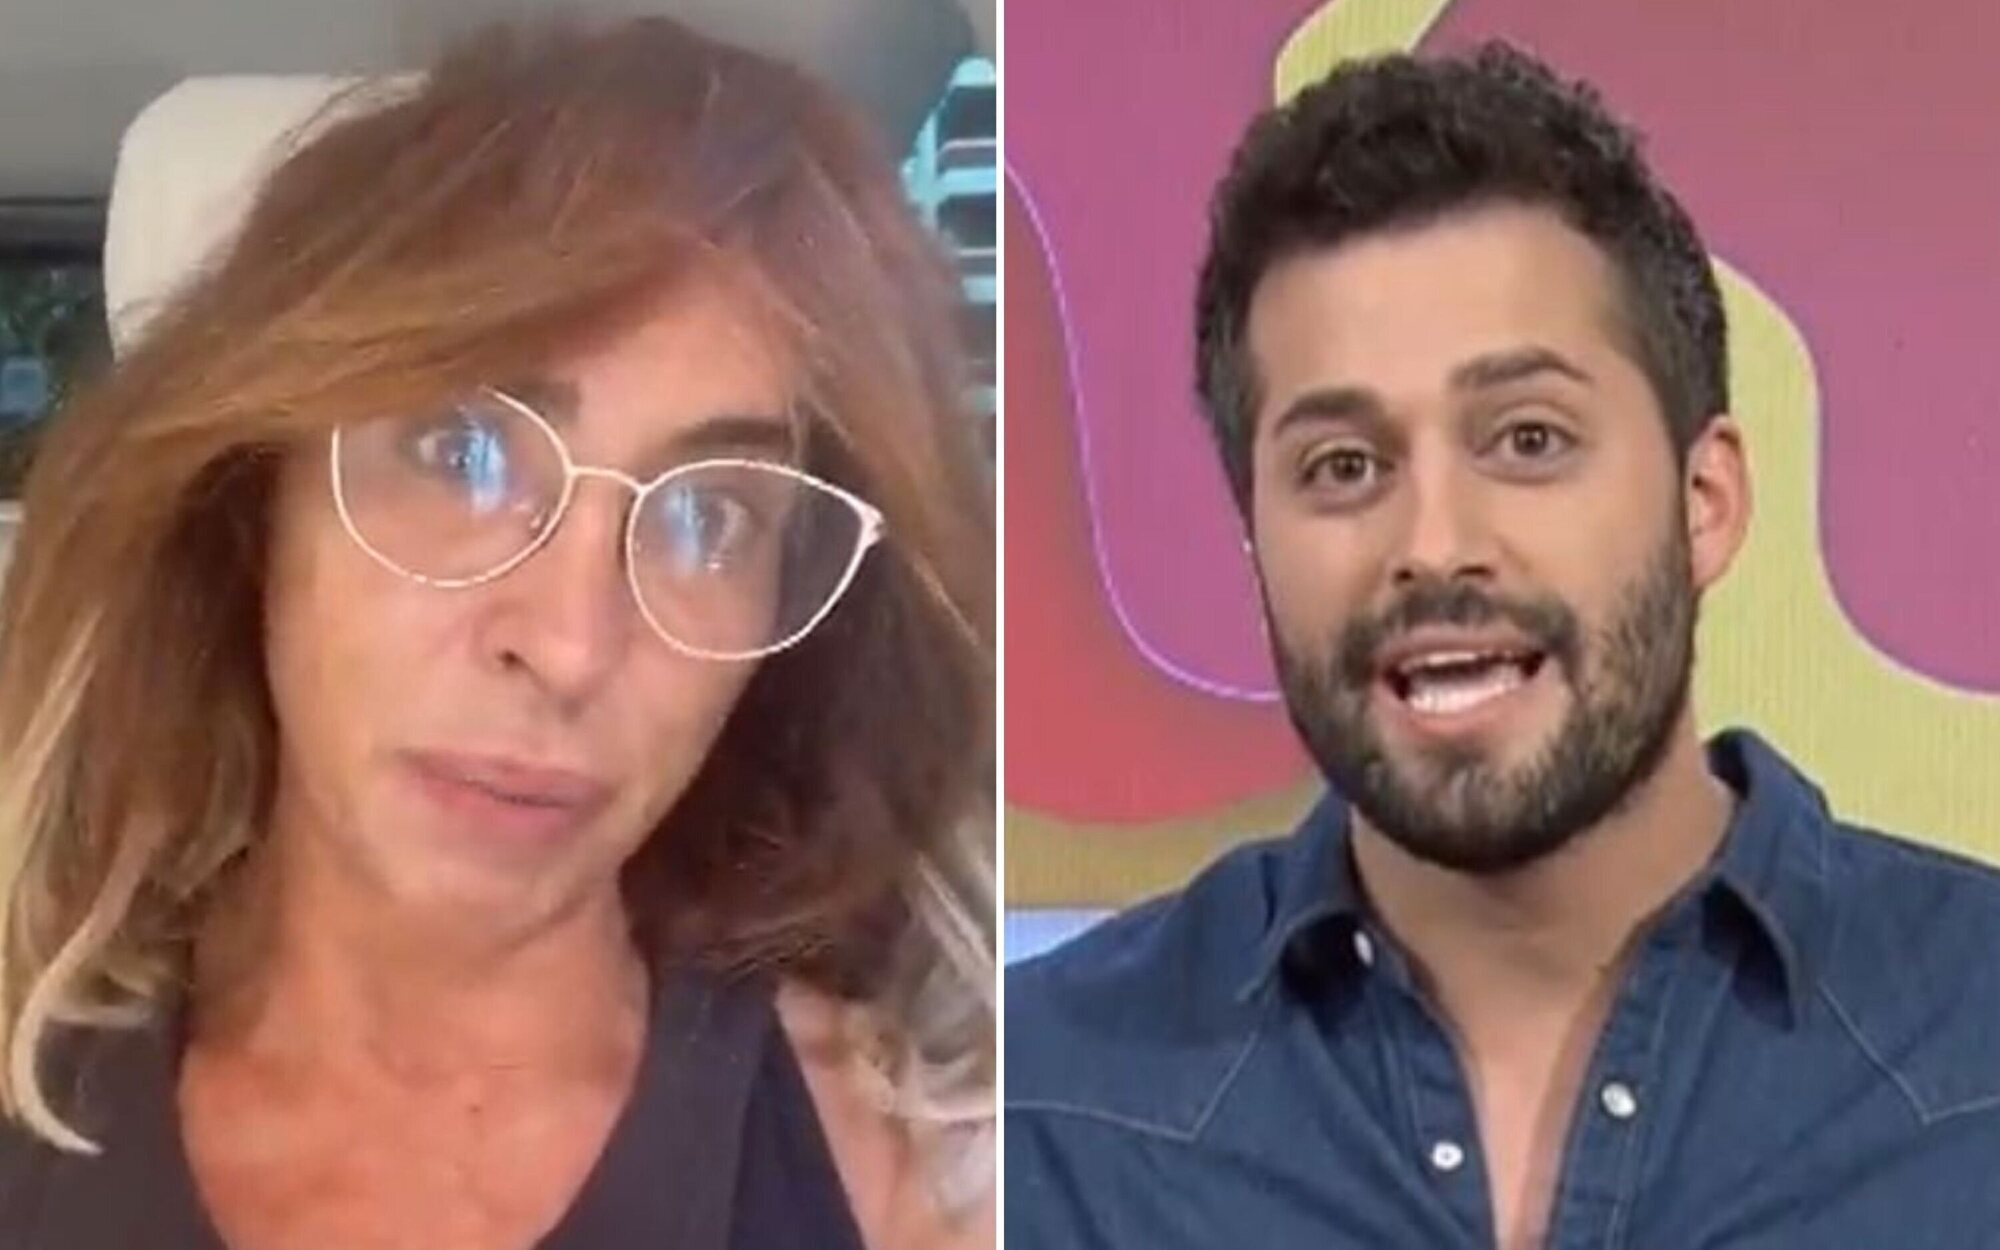 María Patiño no llega a 'Socialité' por un atasco y Javier de Hoyos toma su relevo in extremis